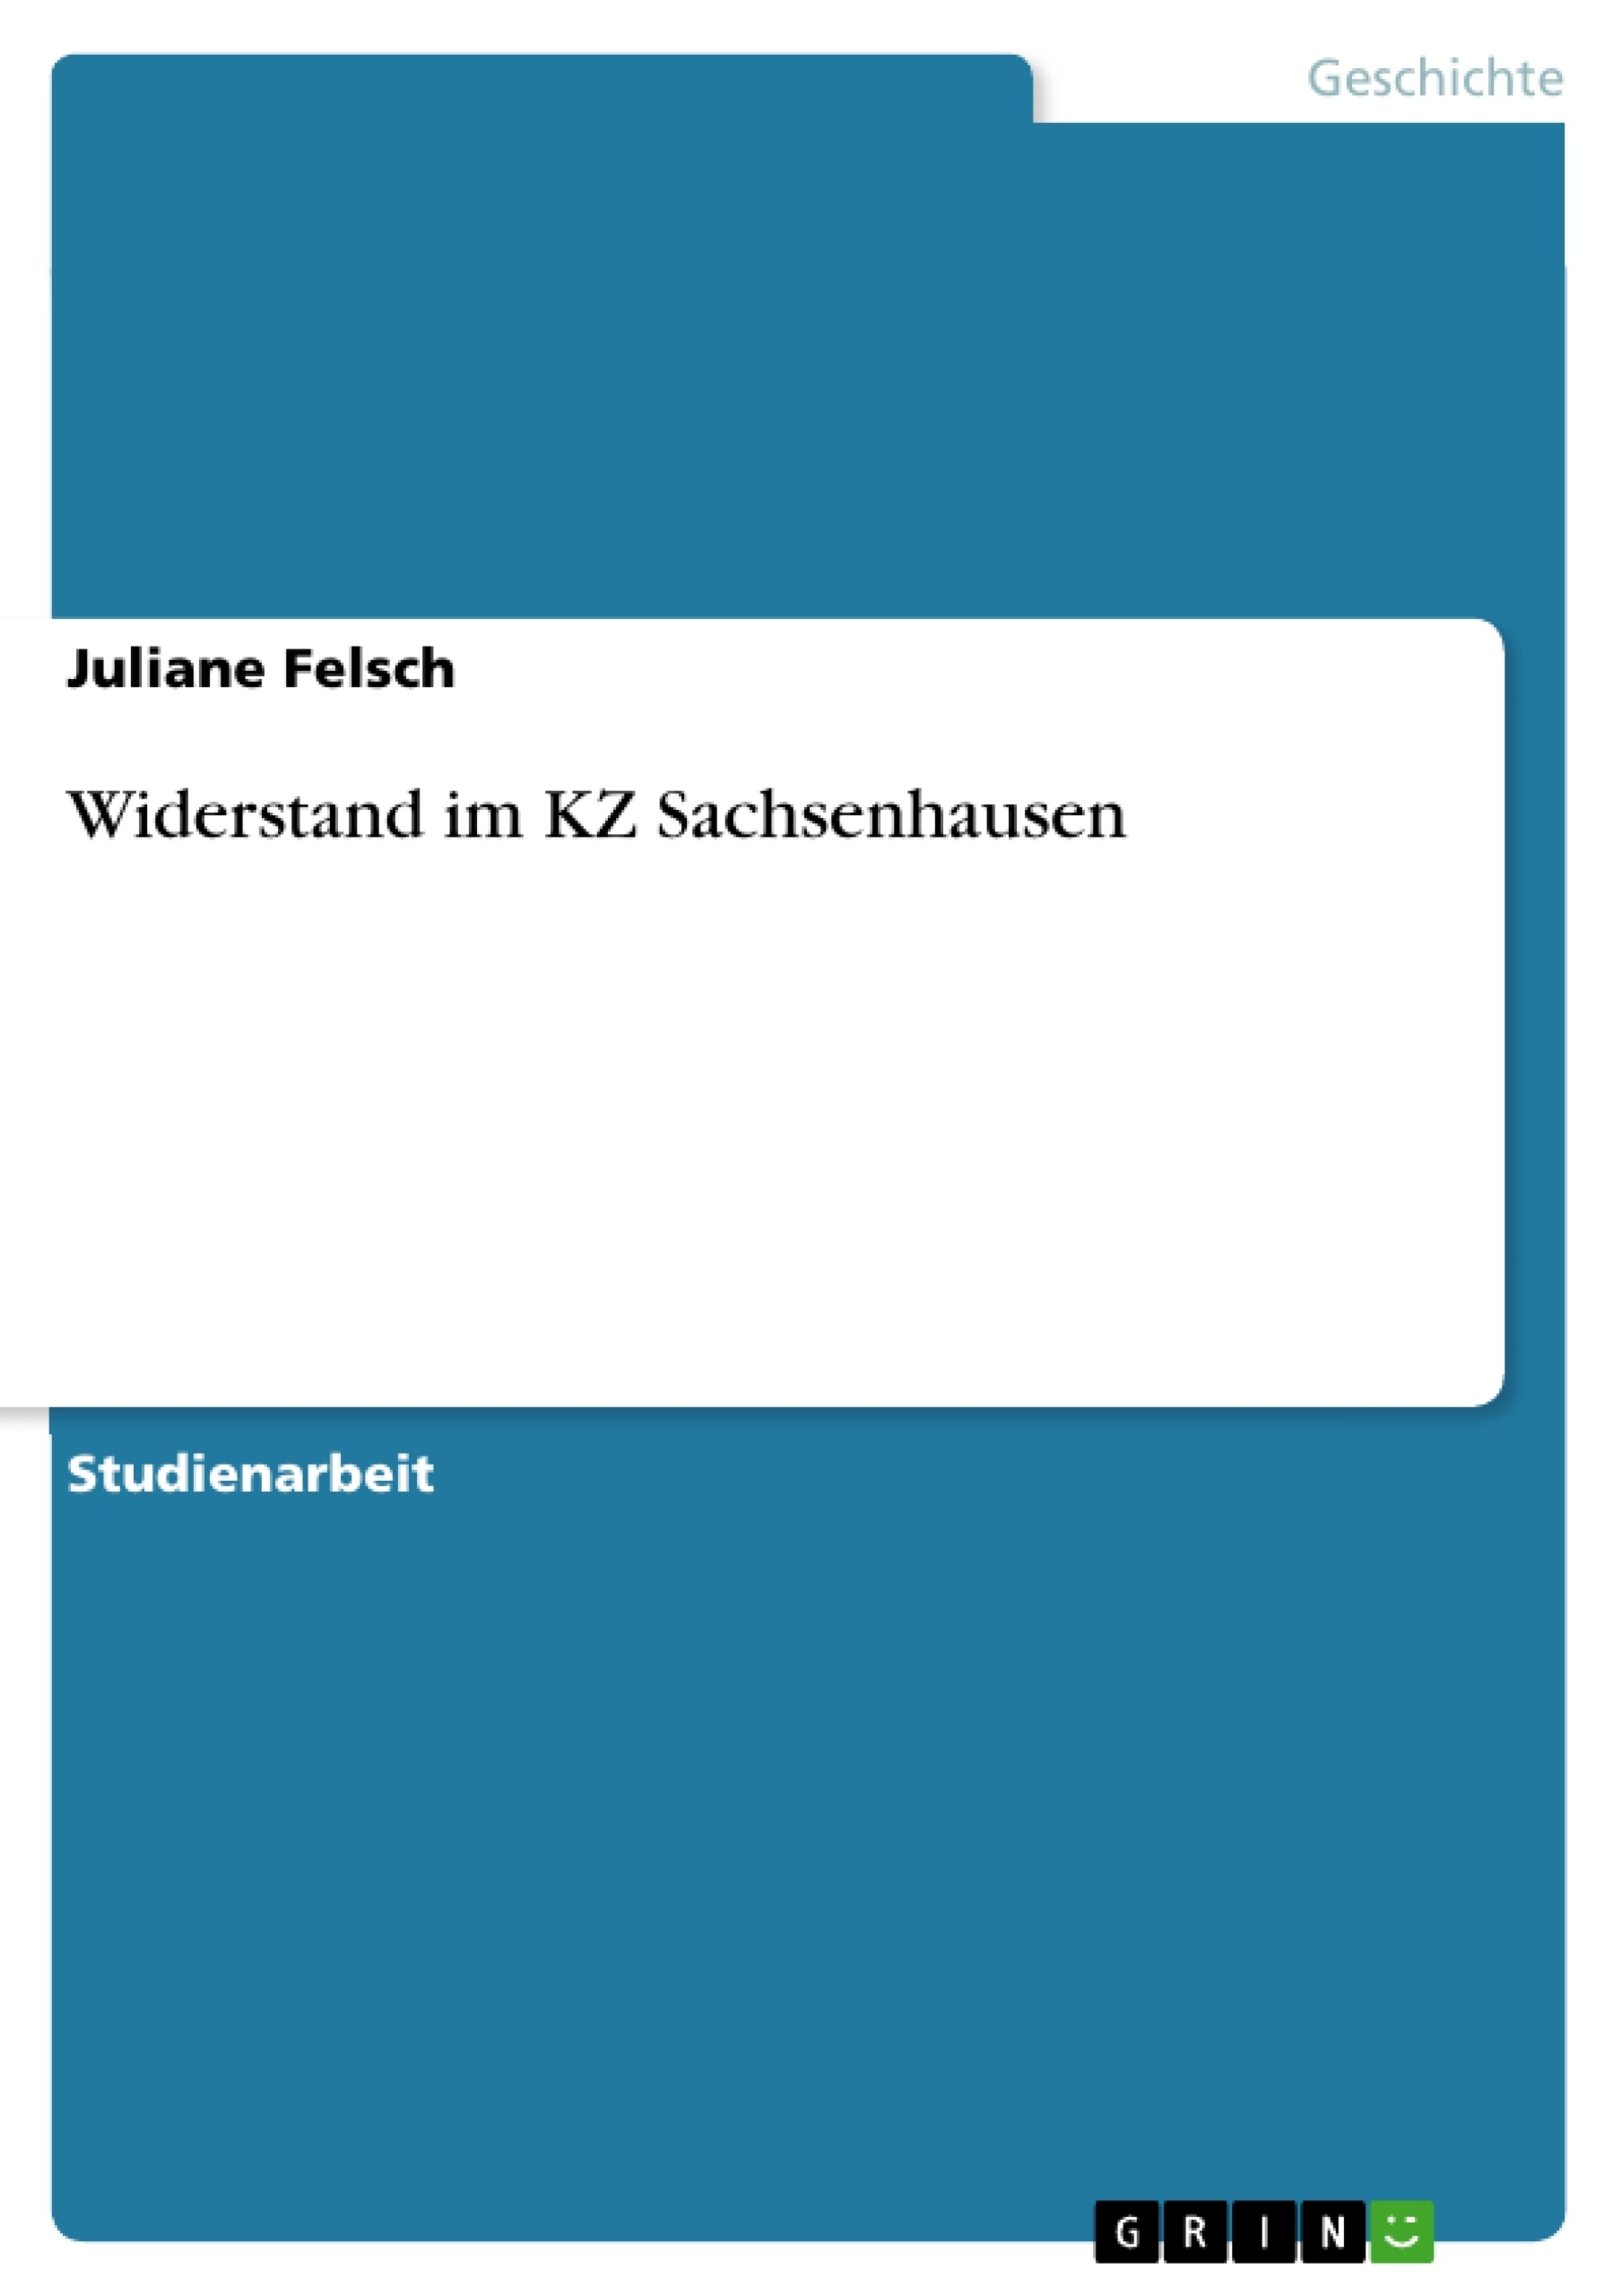 Título: Widerstand im KZ Sachsenhausen 